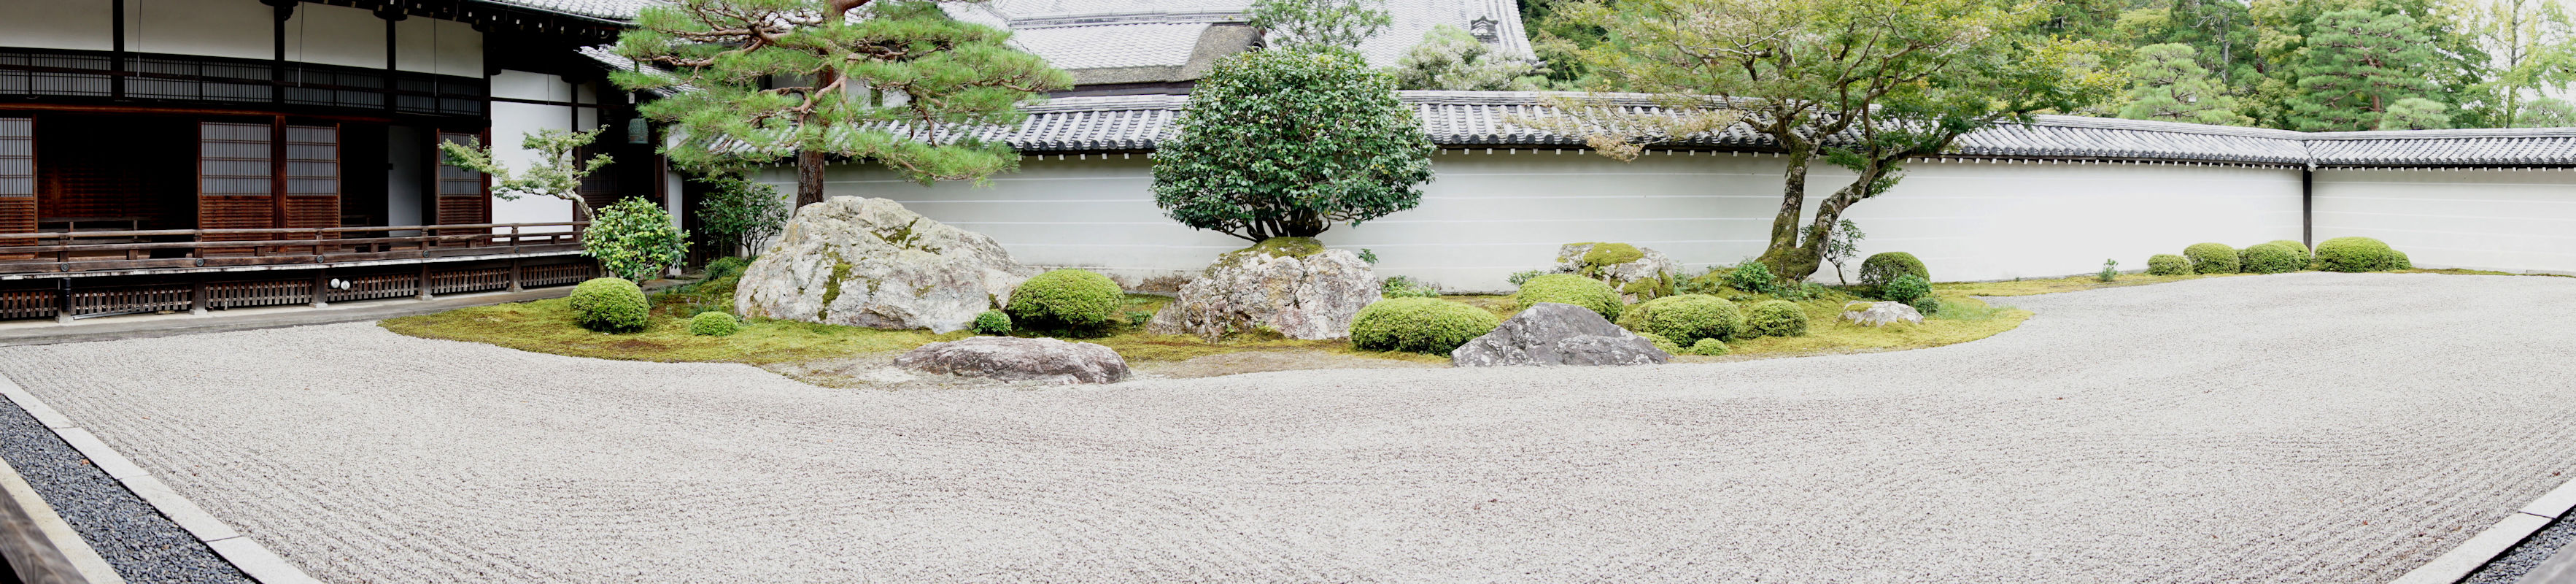 江戸時代初期の代表的枯山水庭園である方丈庭園